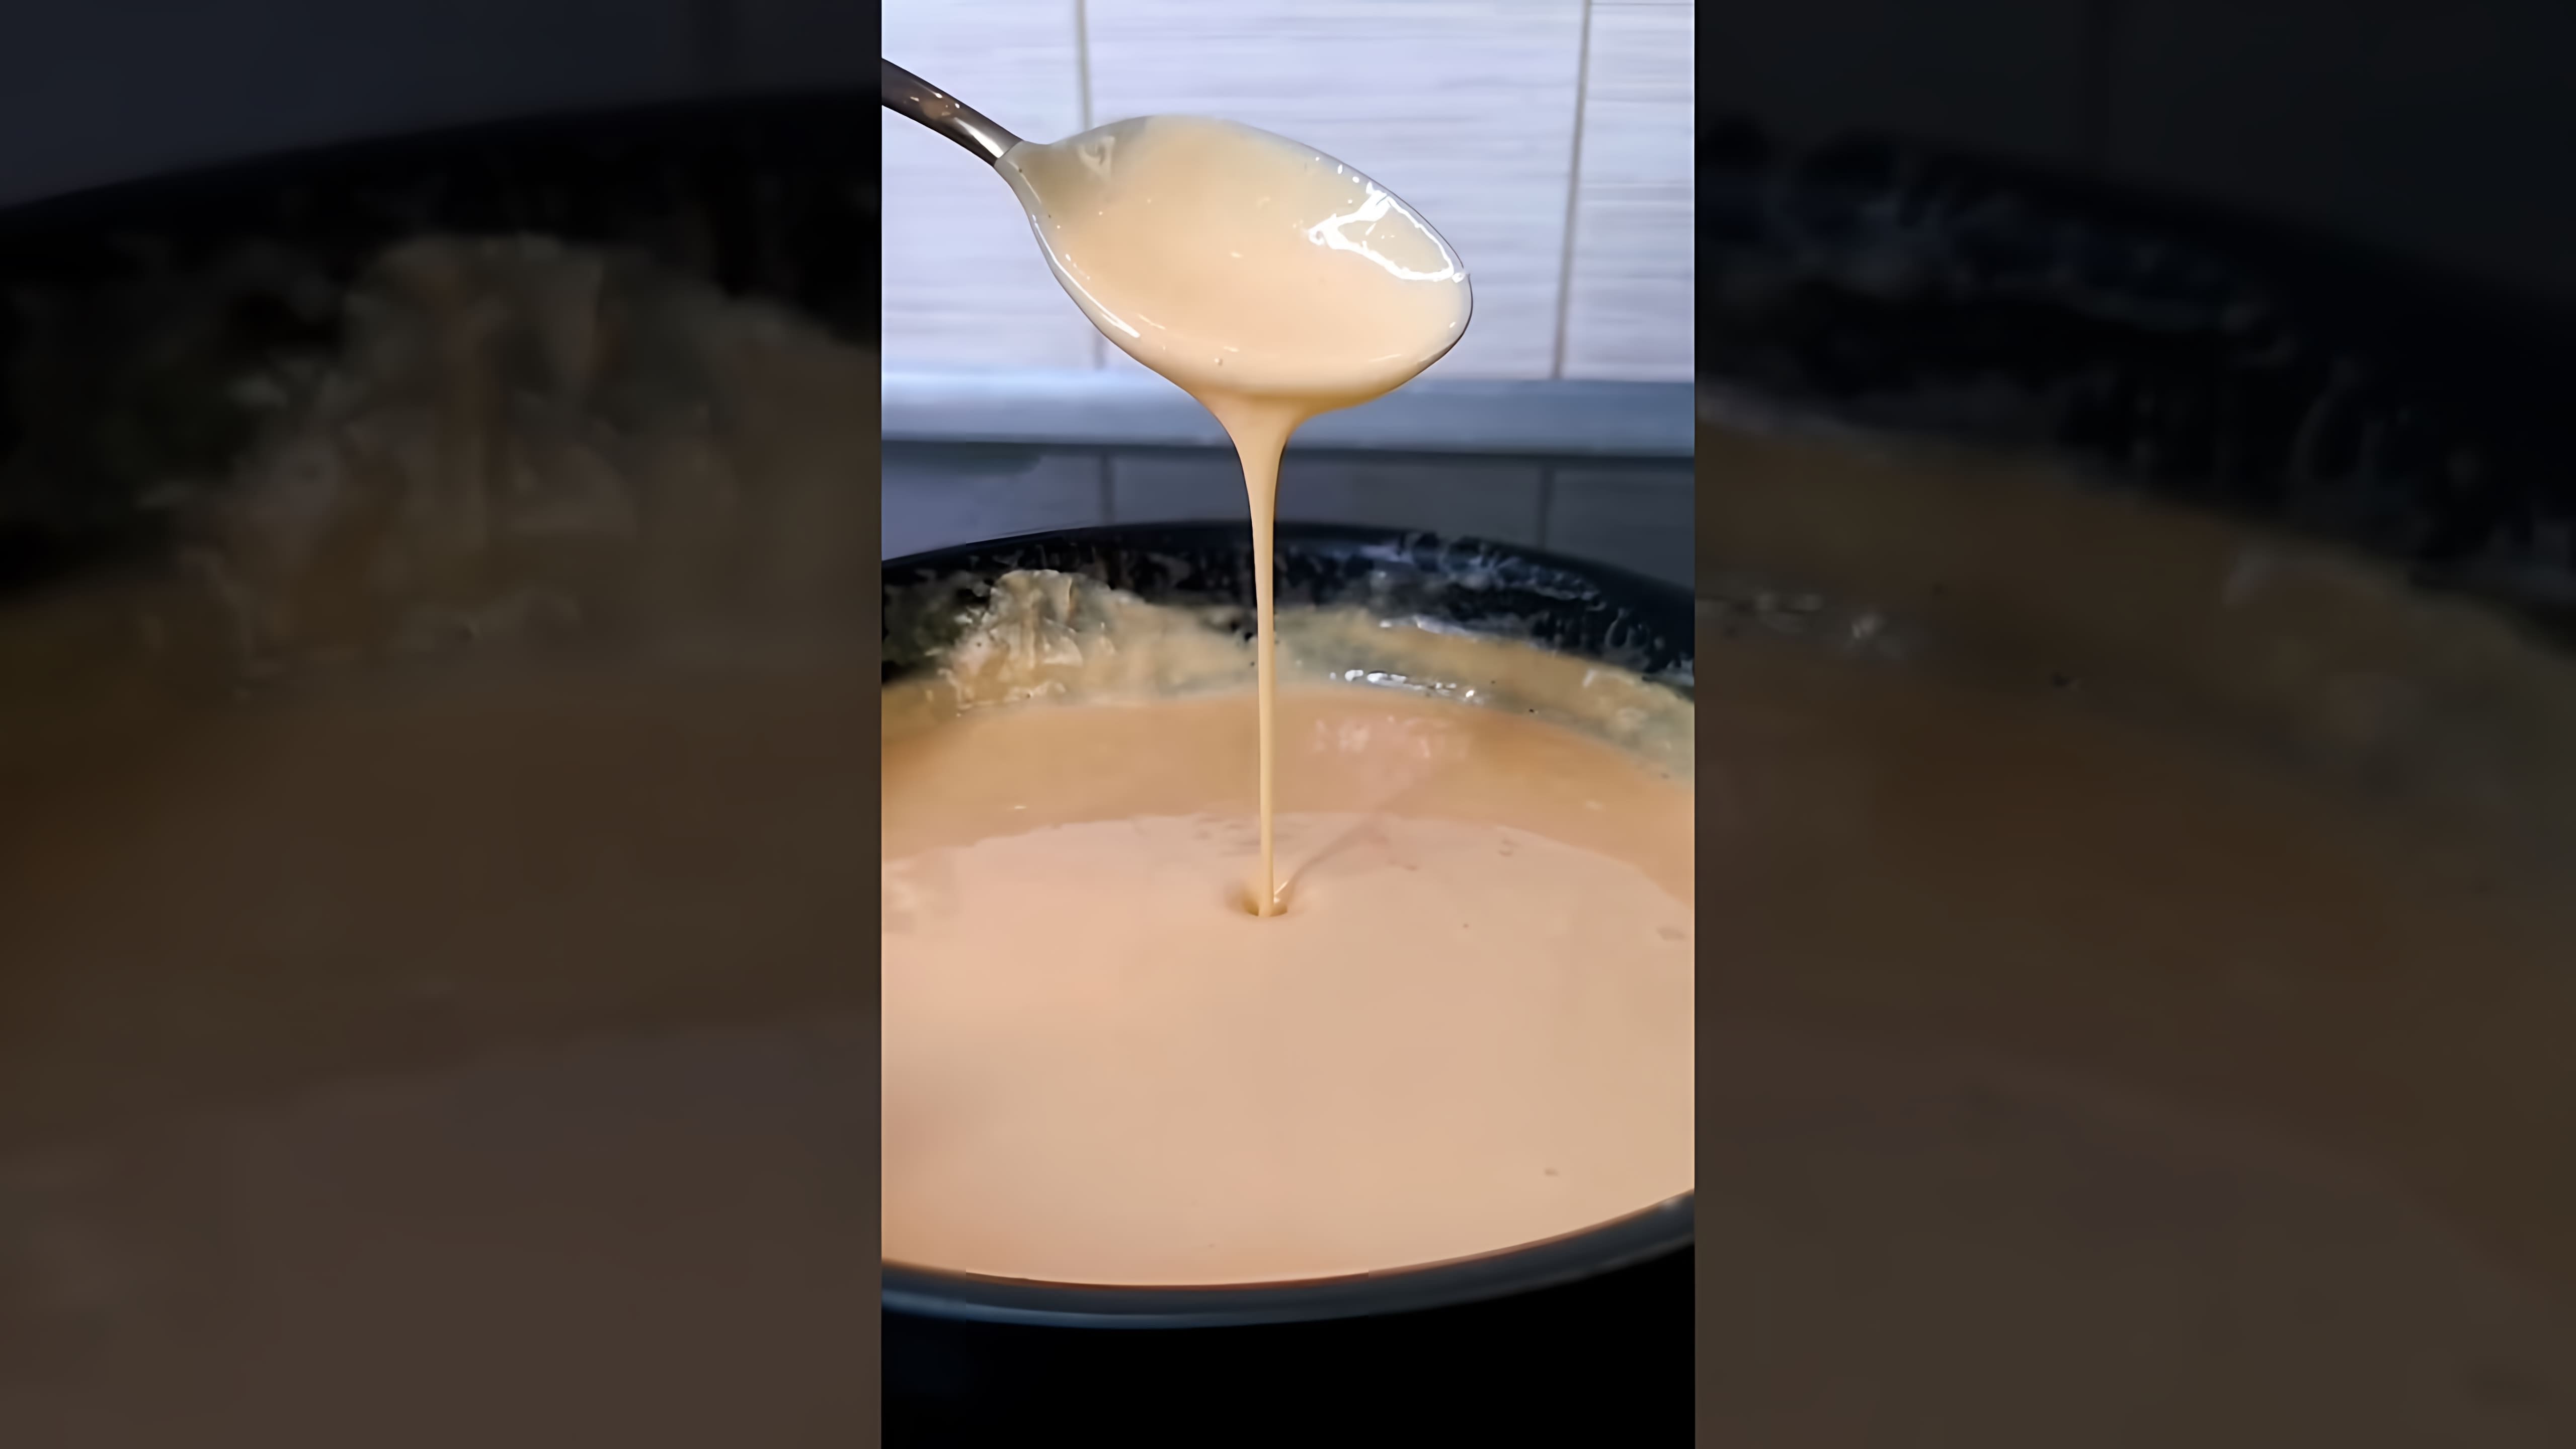 "Мак энд чиз - быстро и сытно" - это видео-ролик, который демонстрирует процесс приготовления вкусного и сытного блюда - мак энд чиз